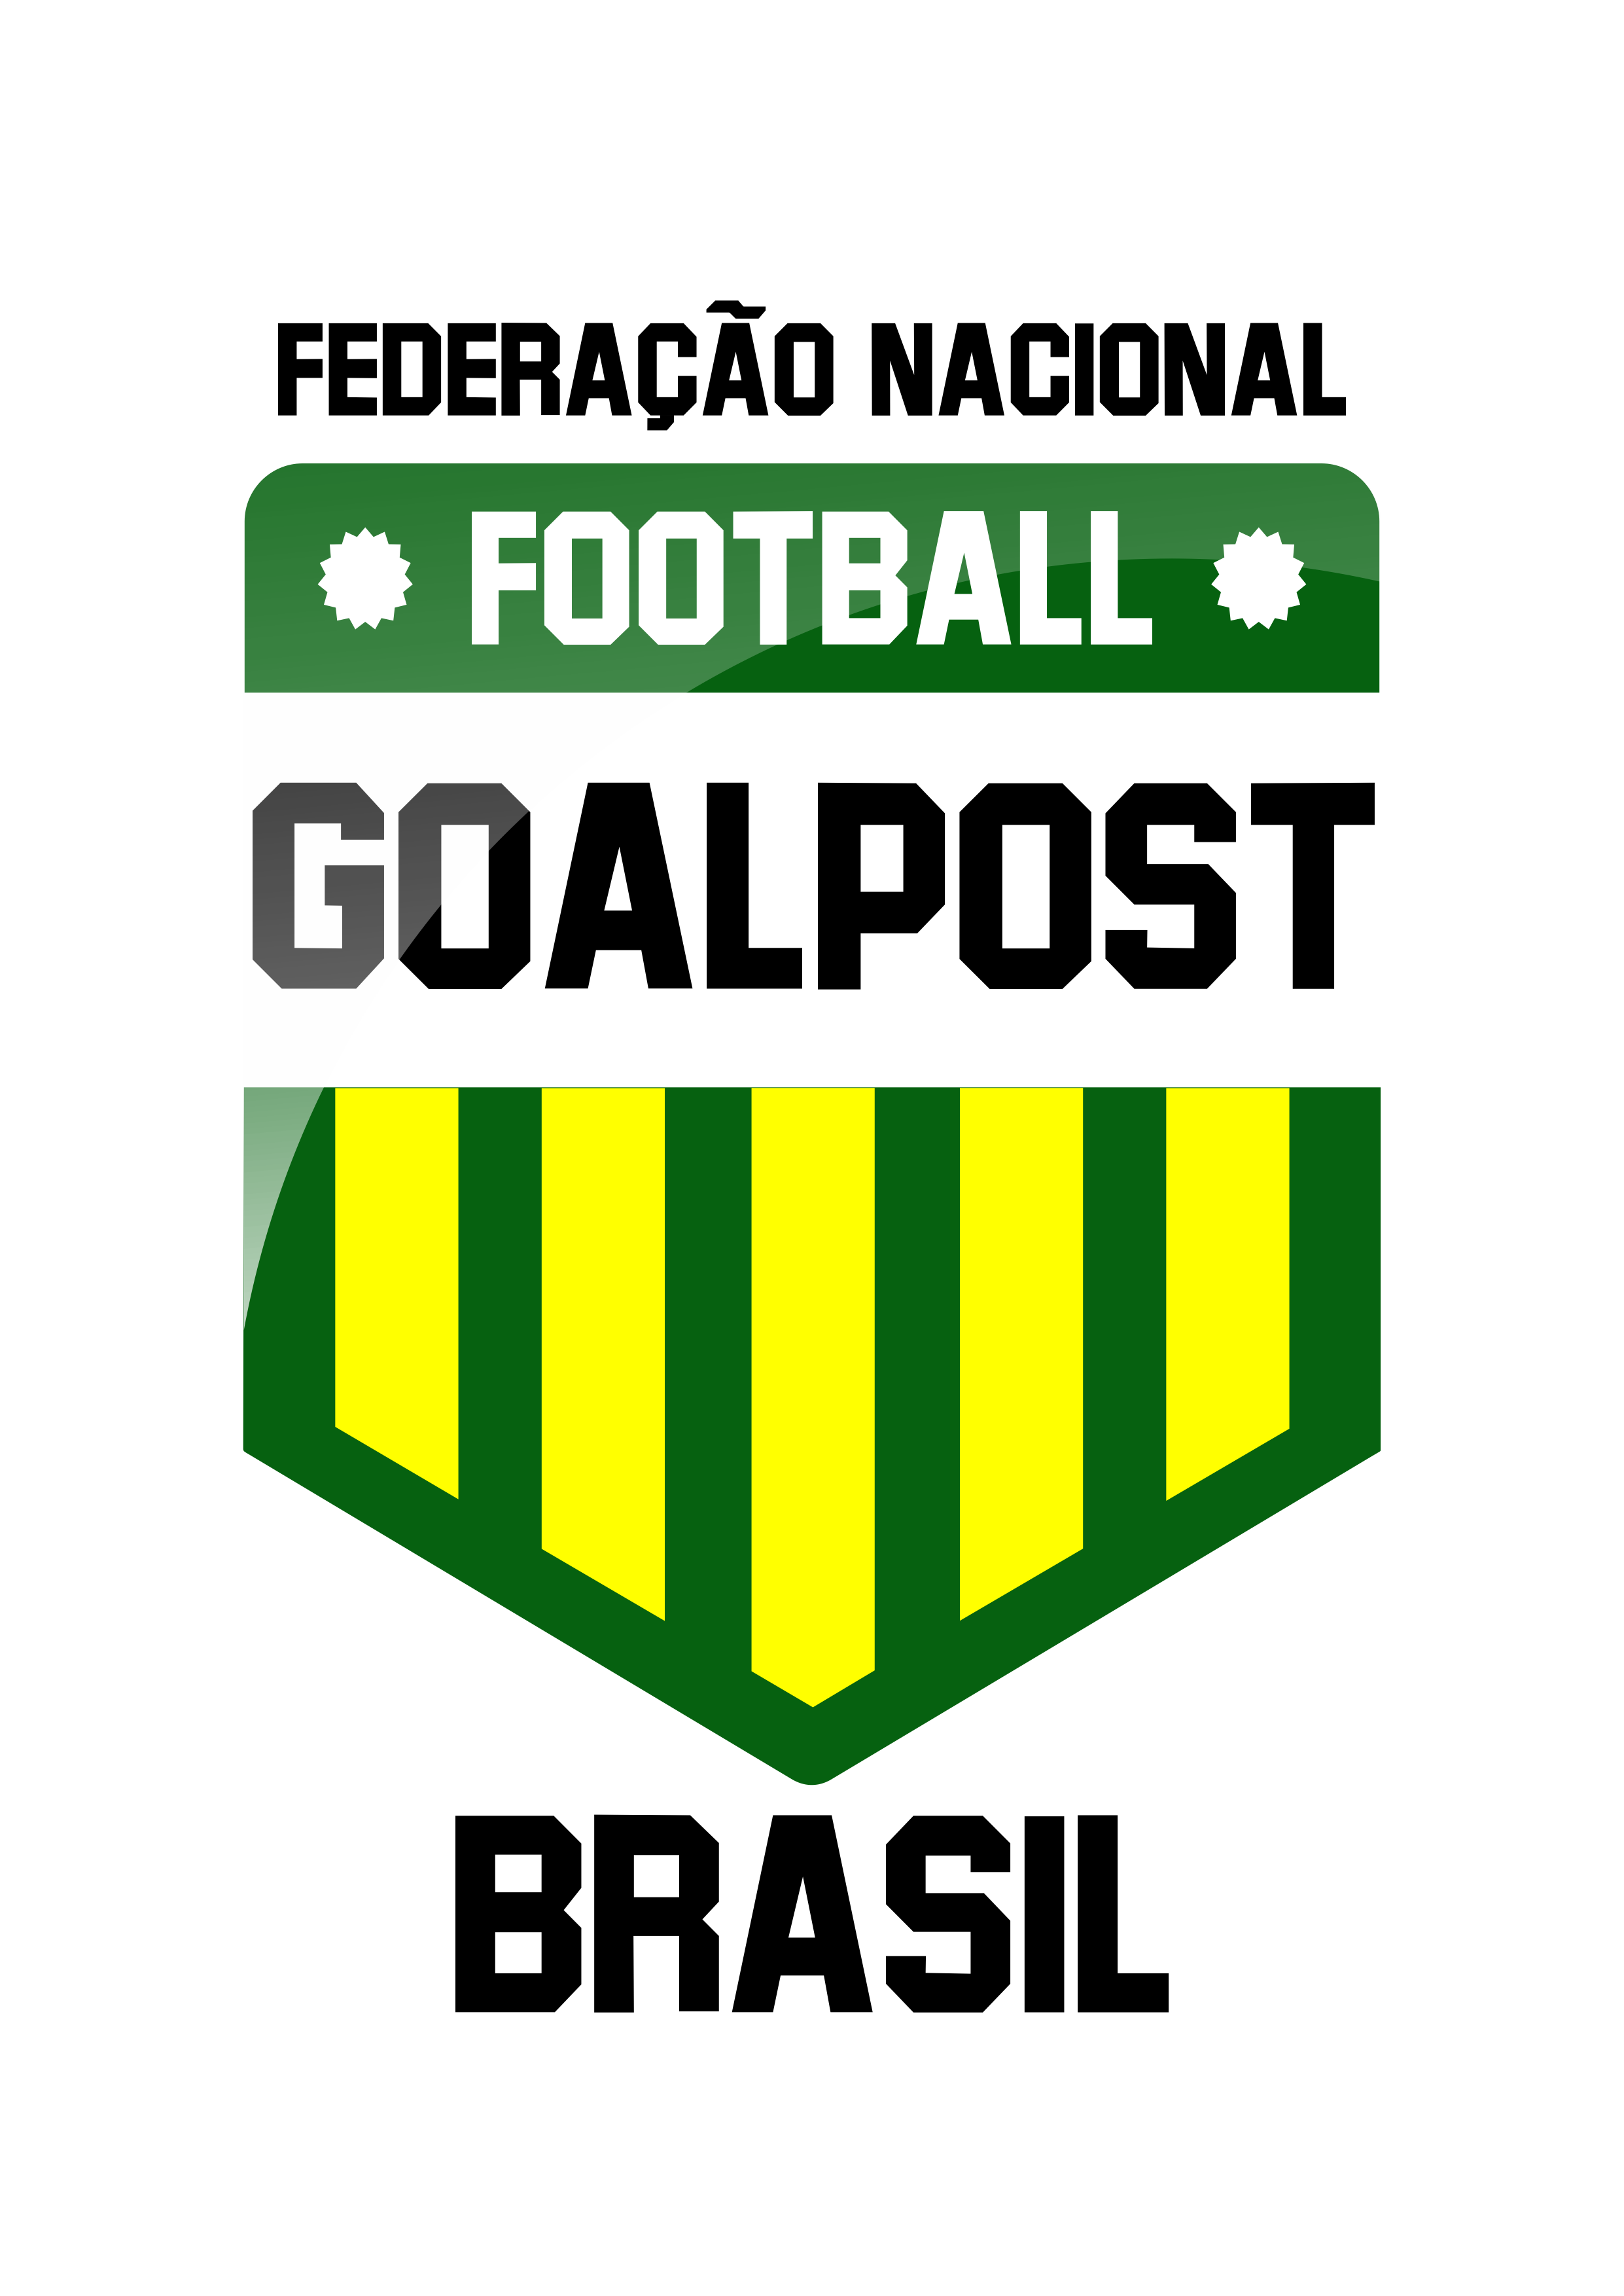 Perfil da Confederação Brasileira de Football Goalpost, uma nova modalidade esportiva.